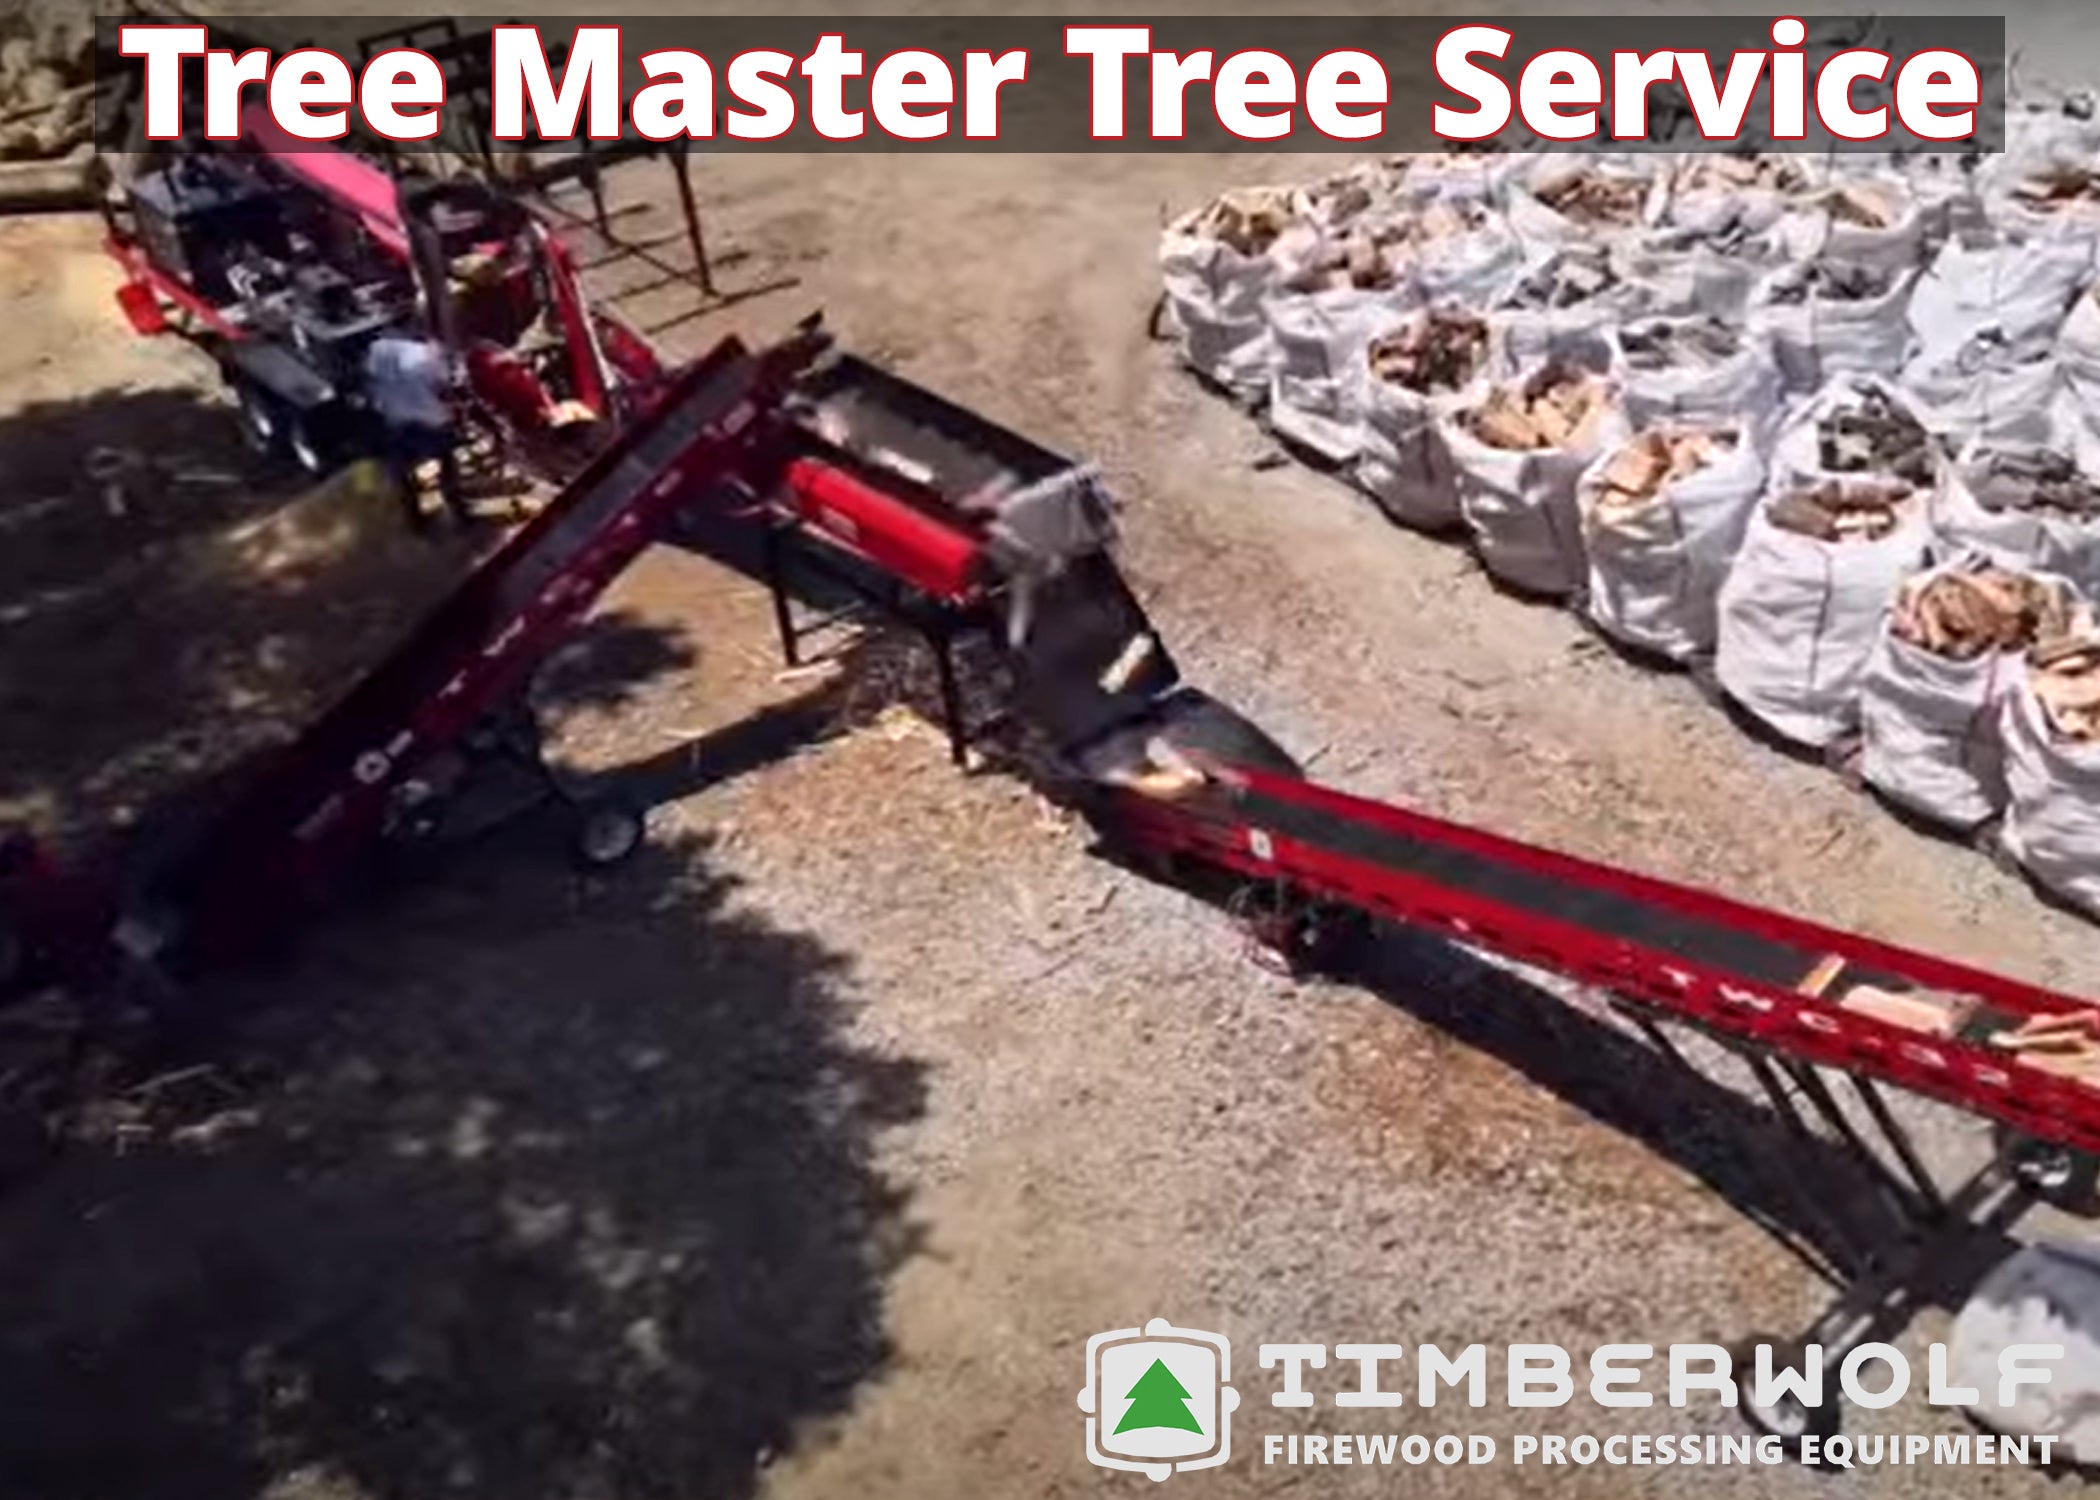 Load video: Tree Master Tree Service x Timberwolf